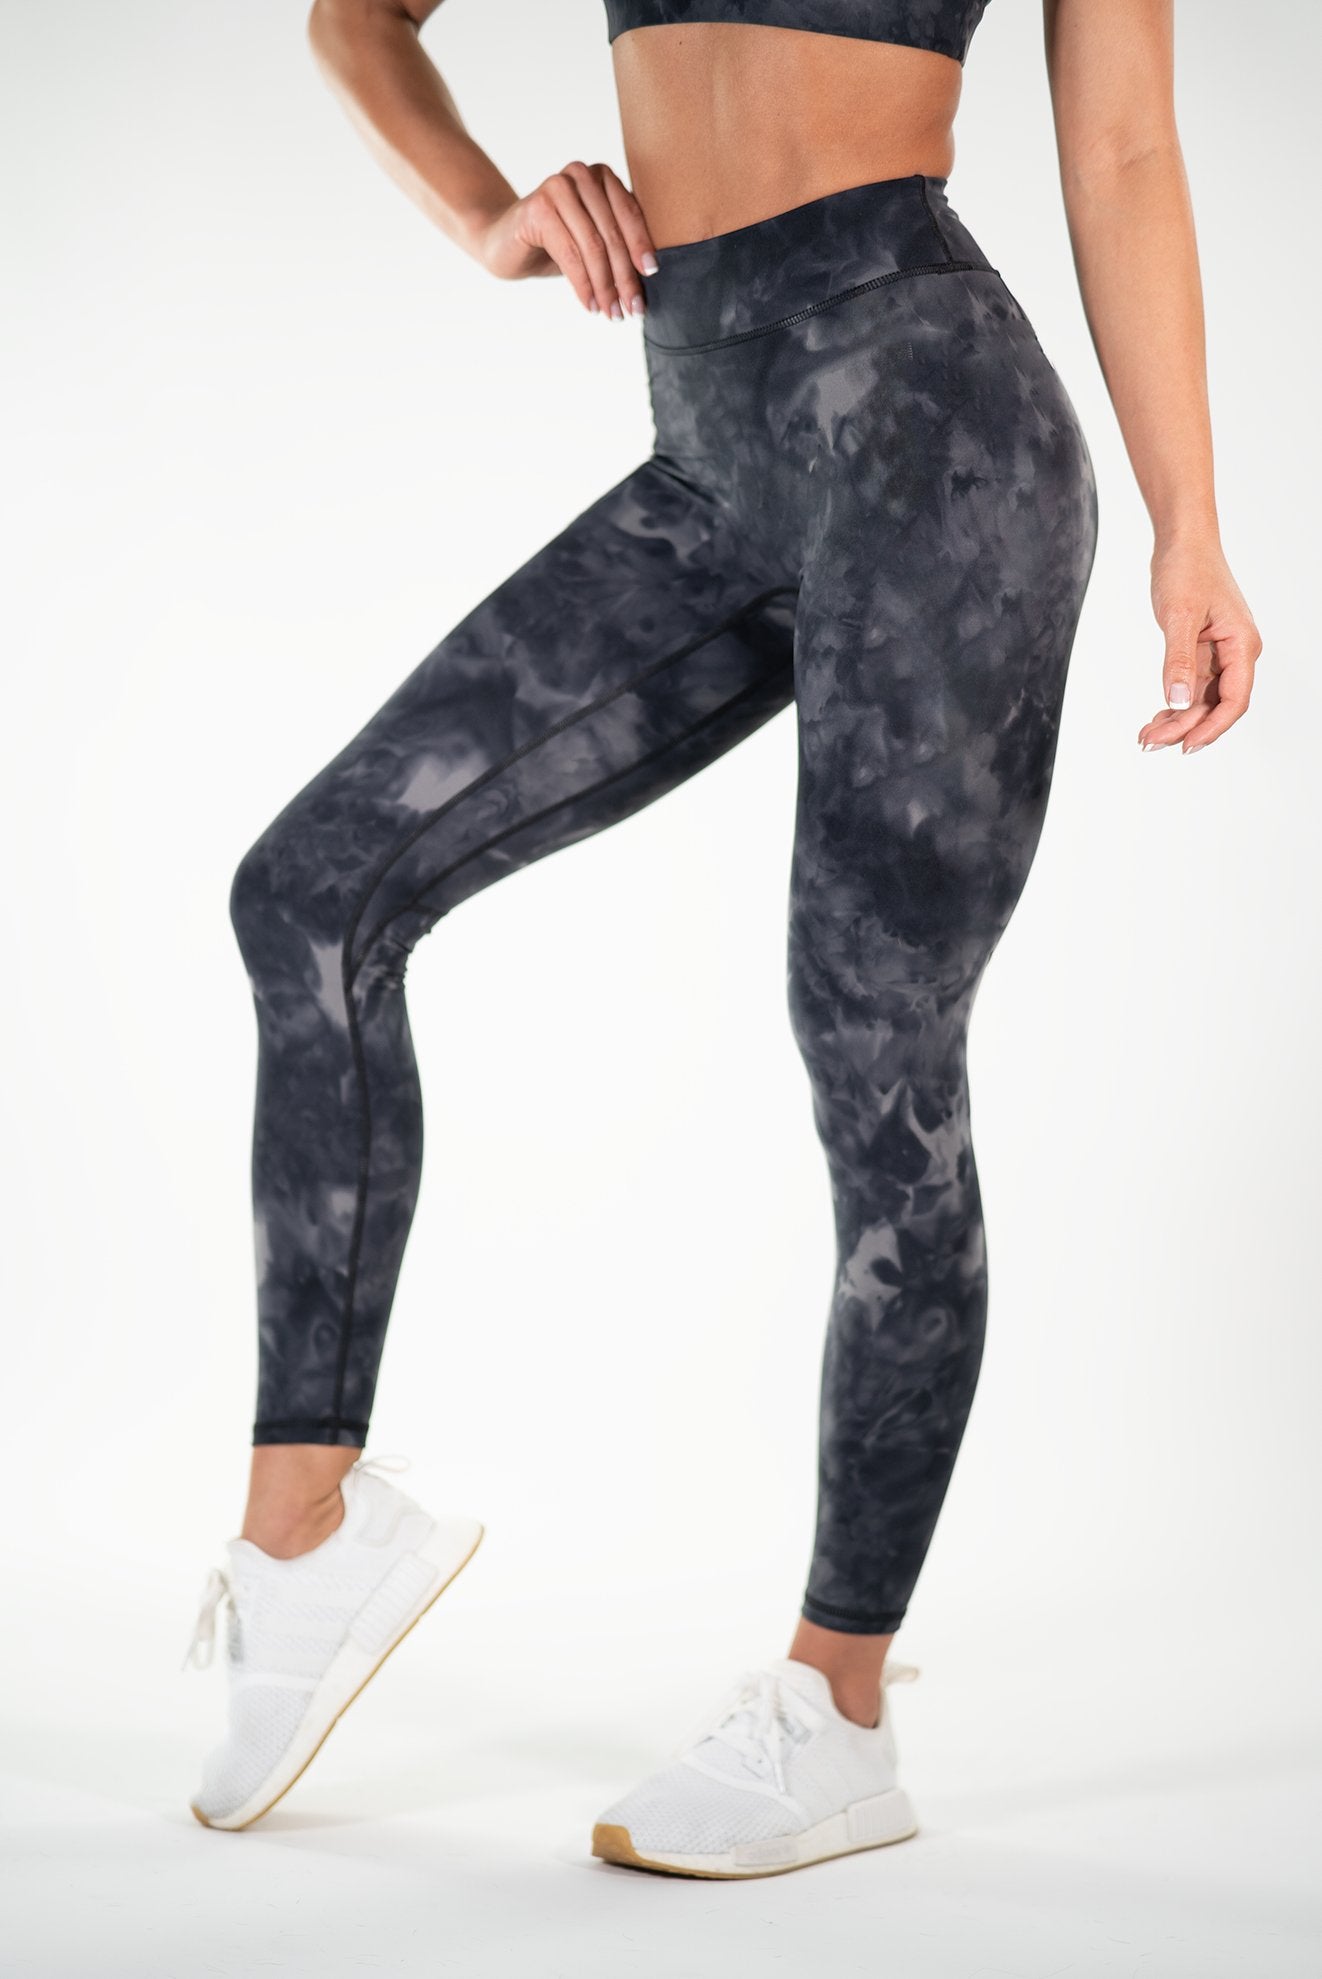 Buy Active Marble Printed Leggings XL, Sports leggings